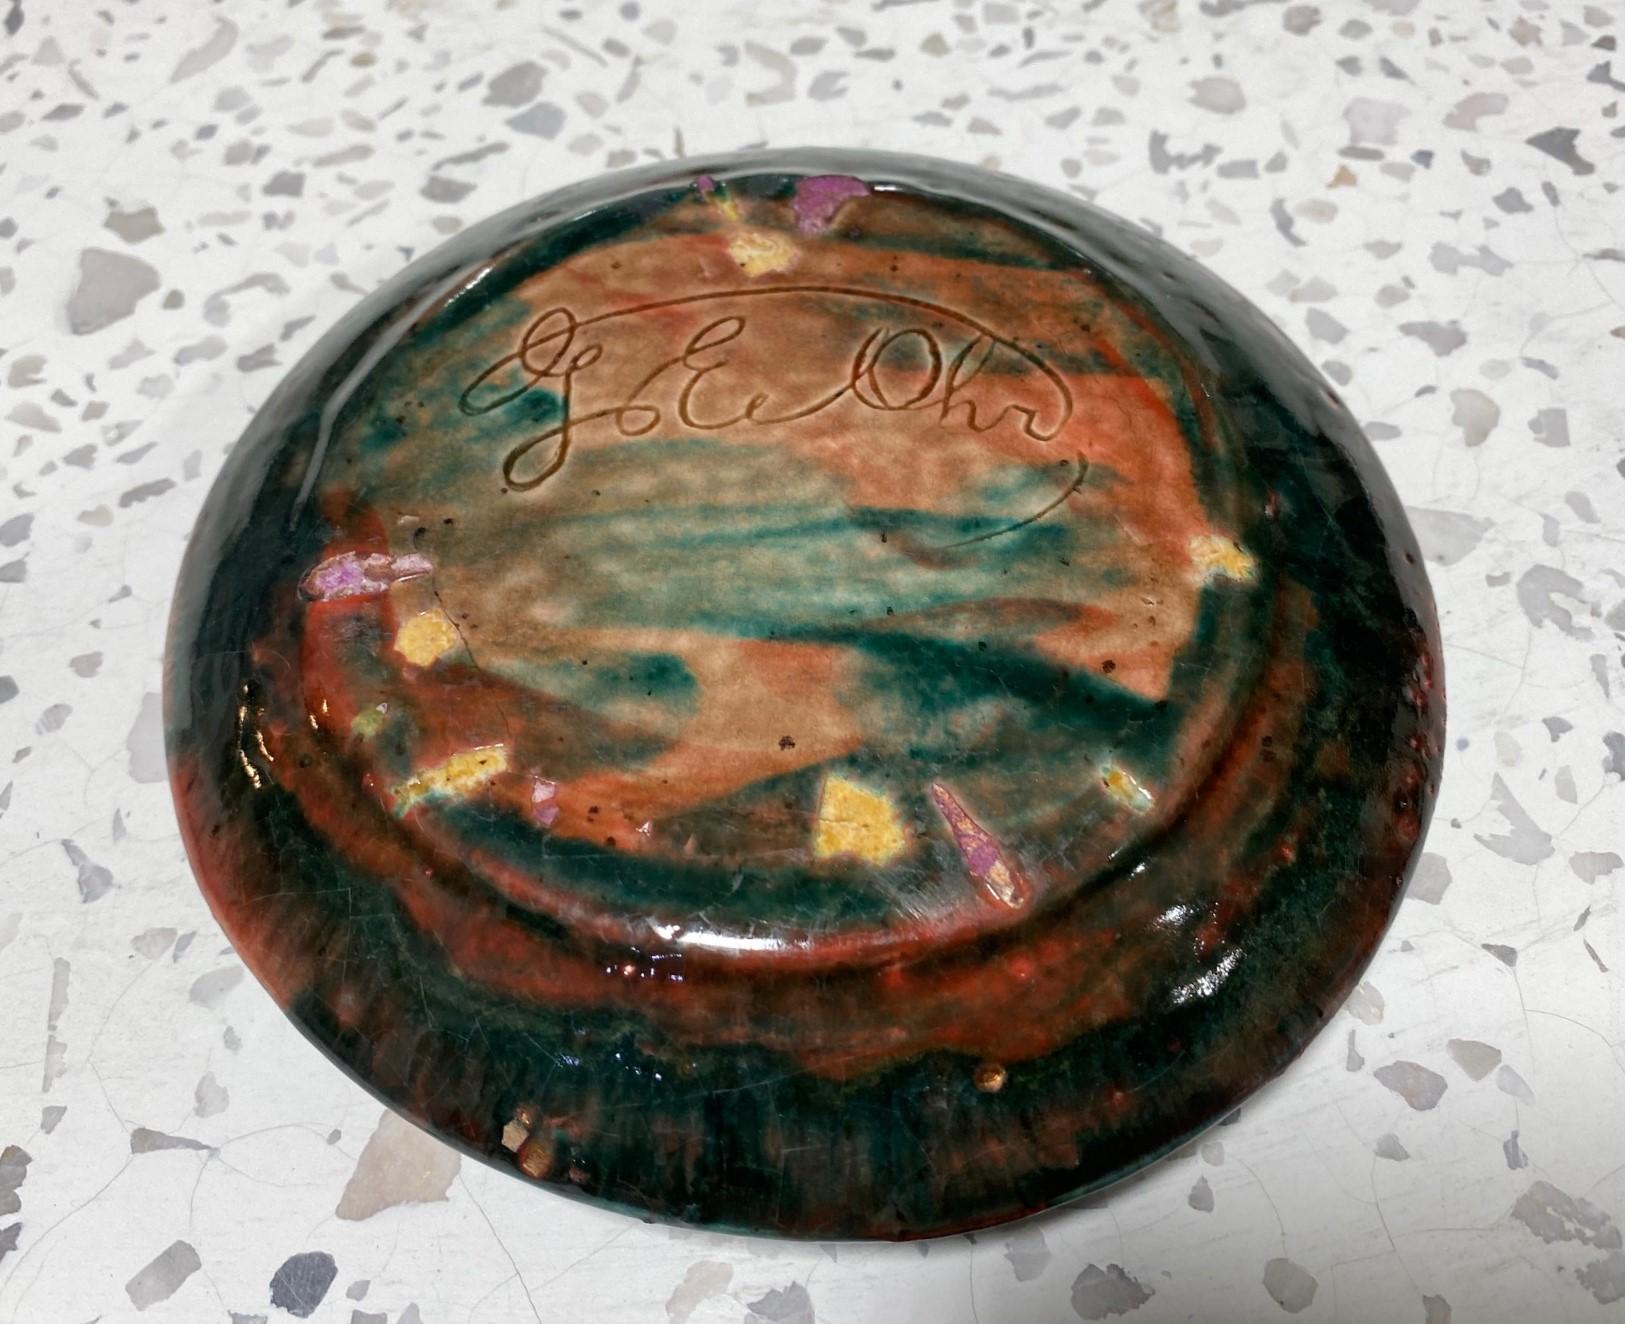 George E. Ohr Signed Biloxi Pottery Glazed Art Ceramic Ruffled Thin Rim Bowl 10